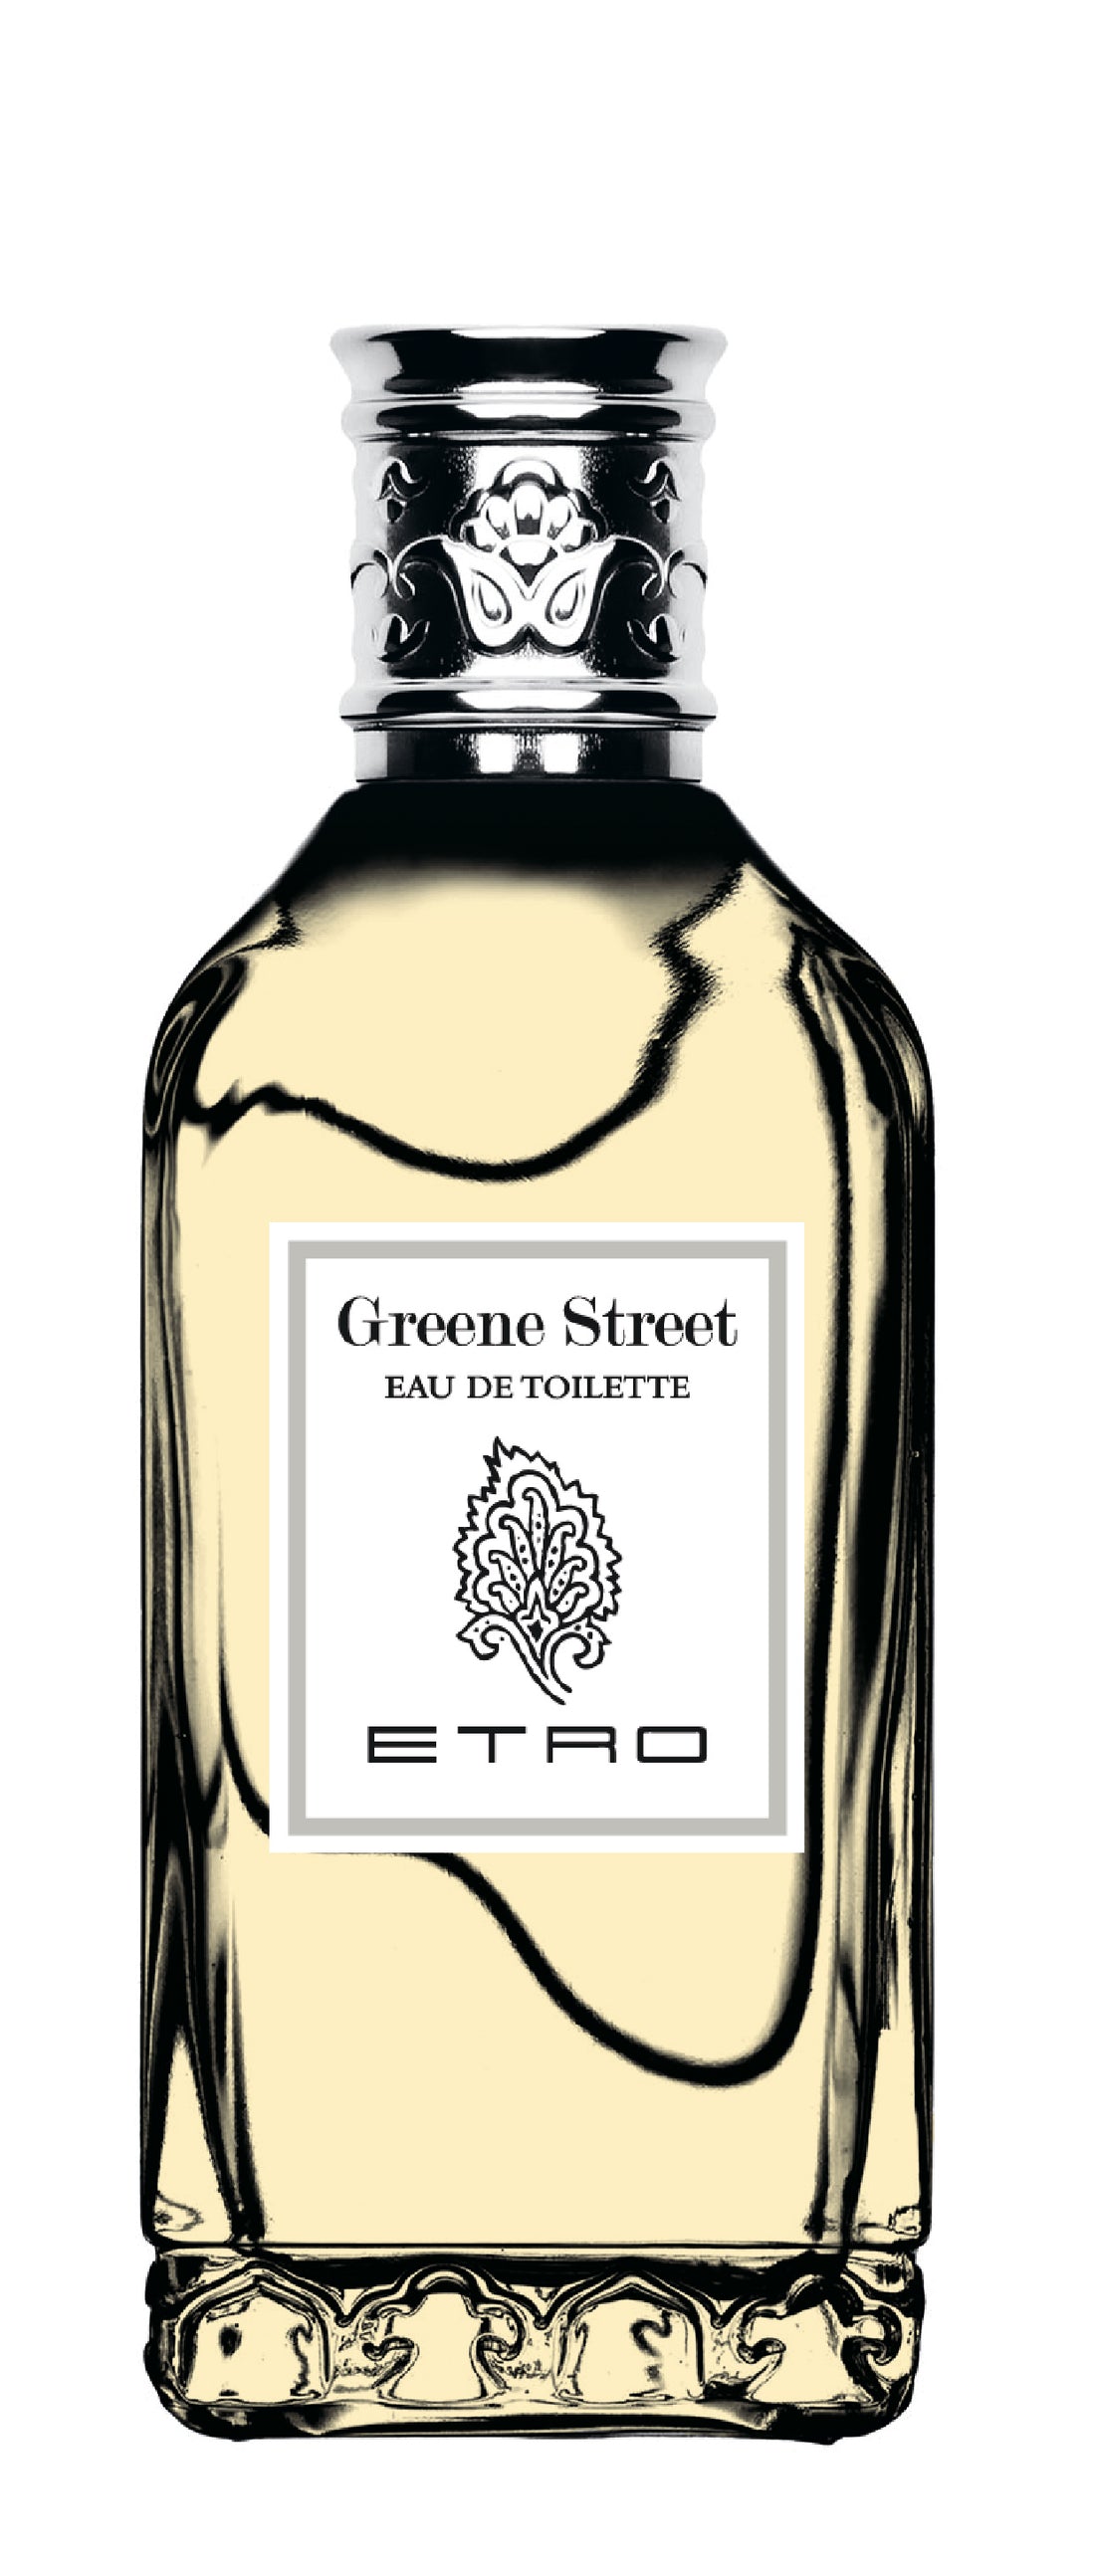 ETRO - GREENE STREET EAU DE TOILETTE